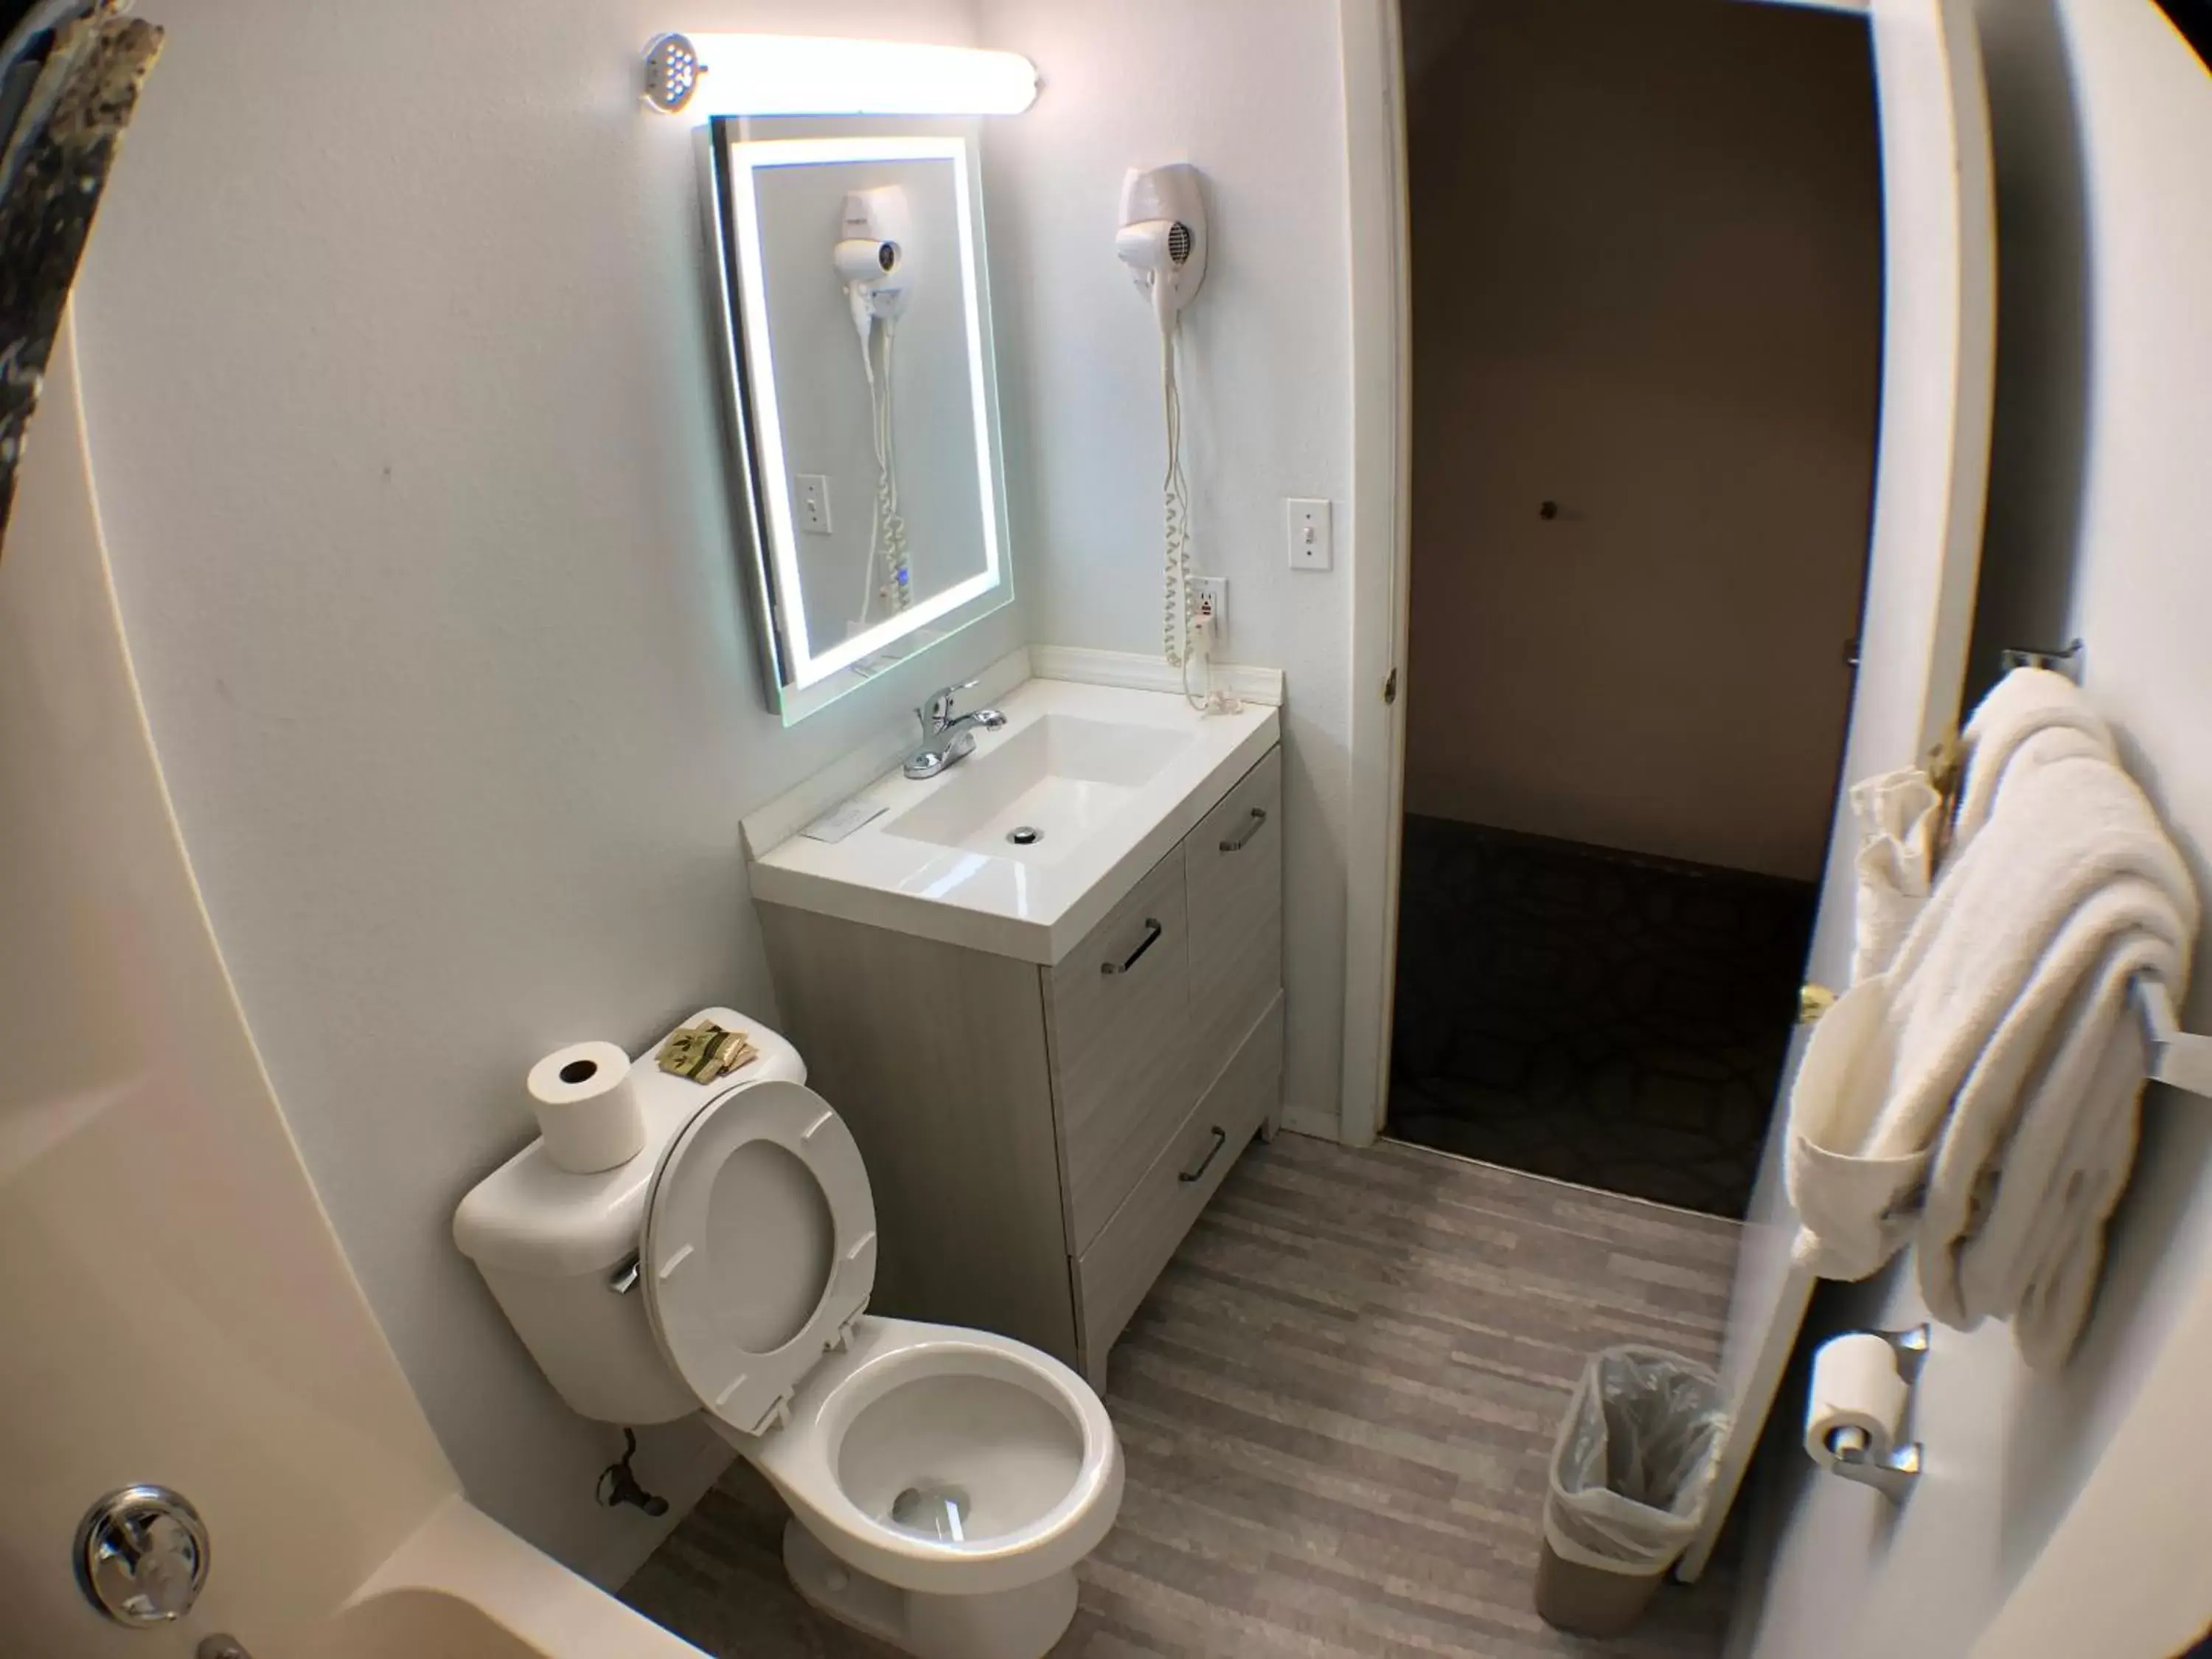 Bathroom in Tower 64 Motel & RV